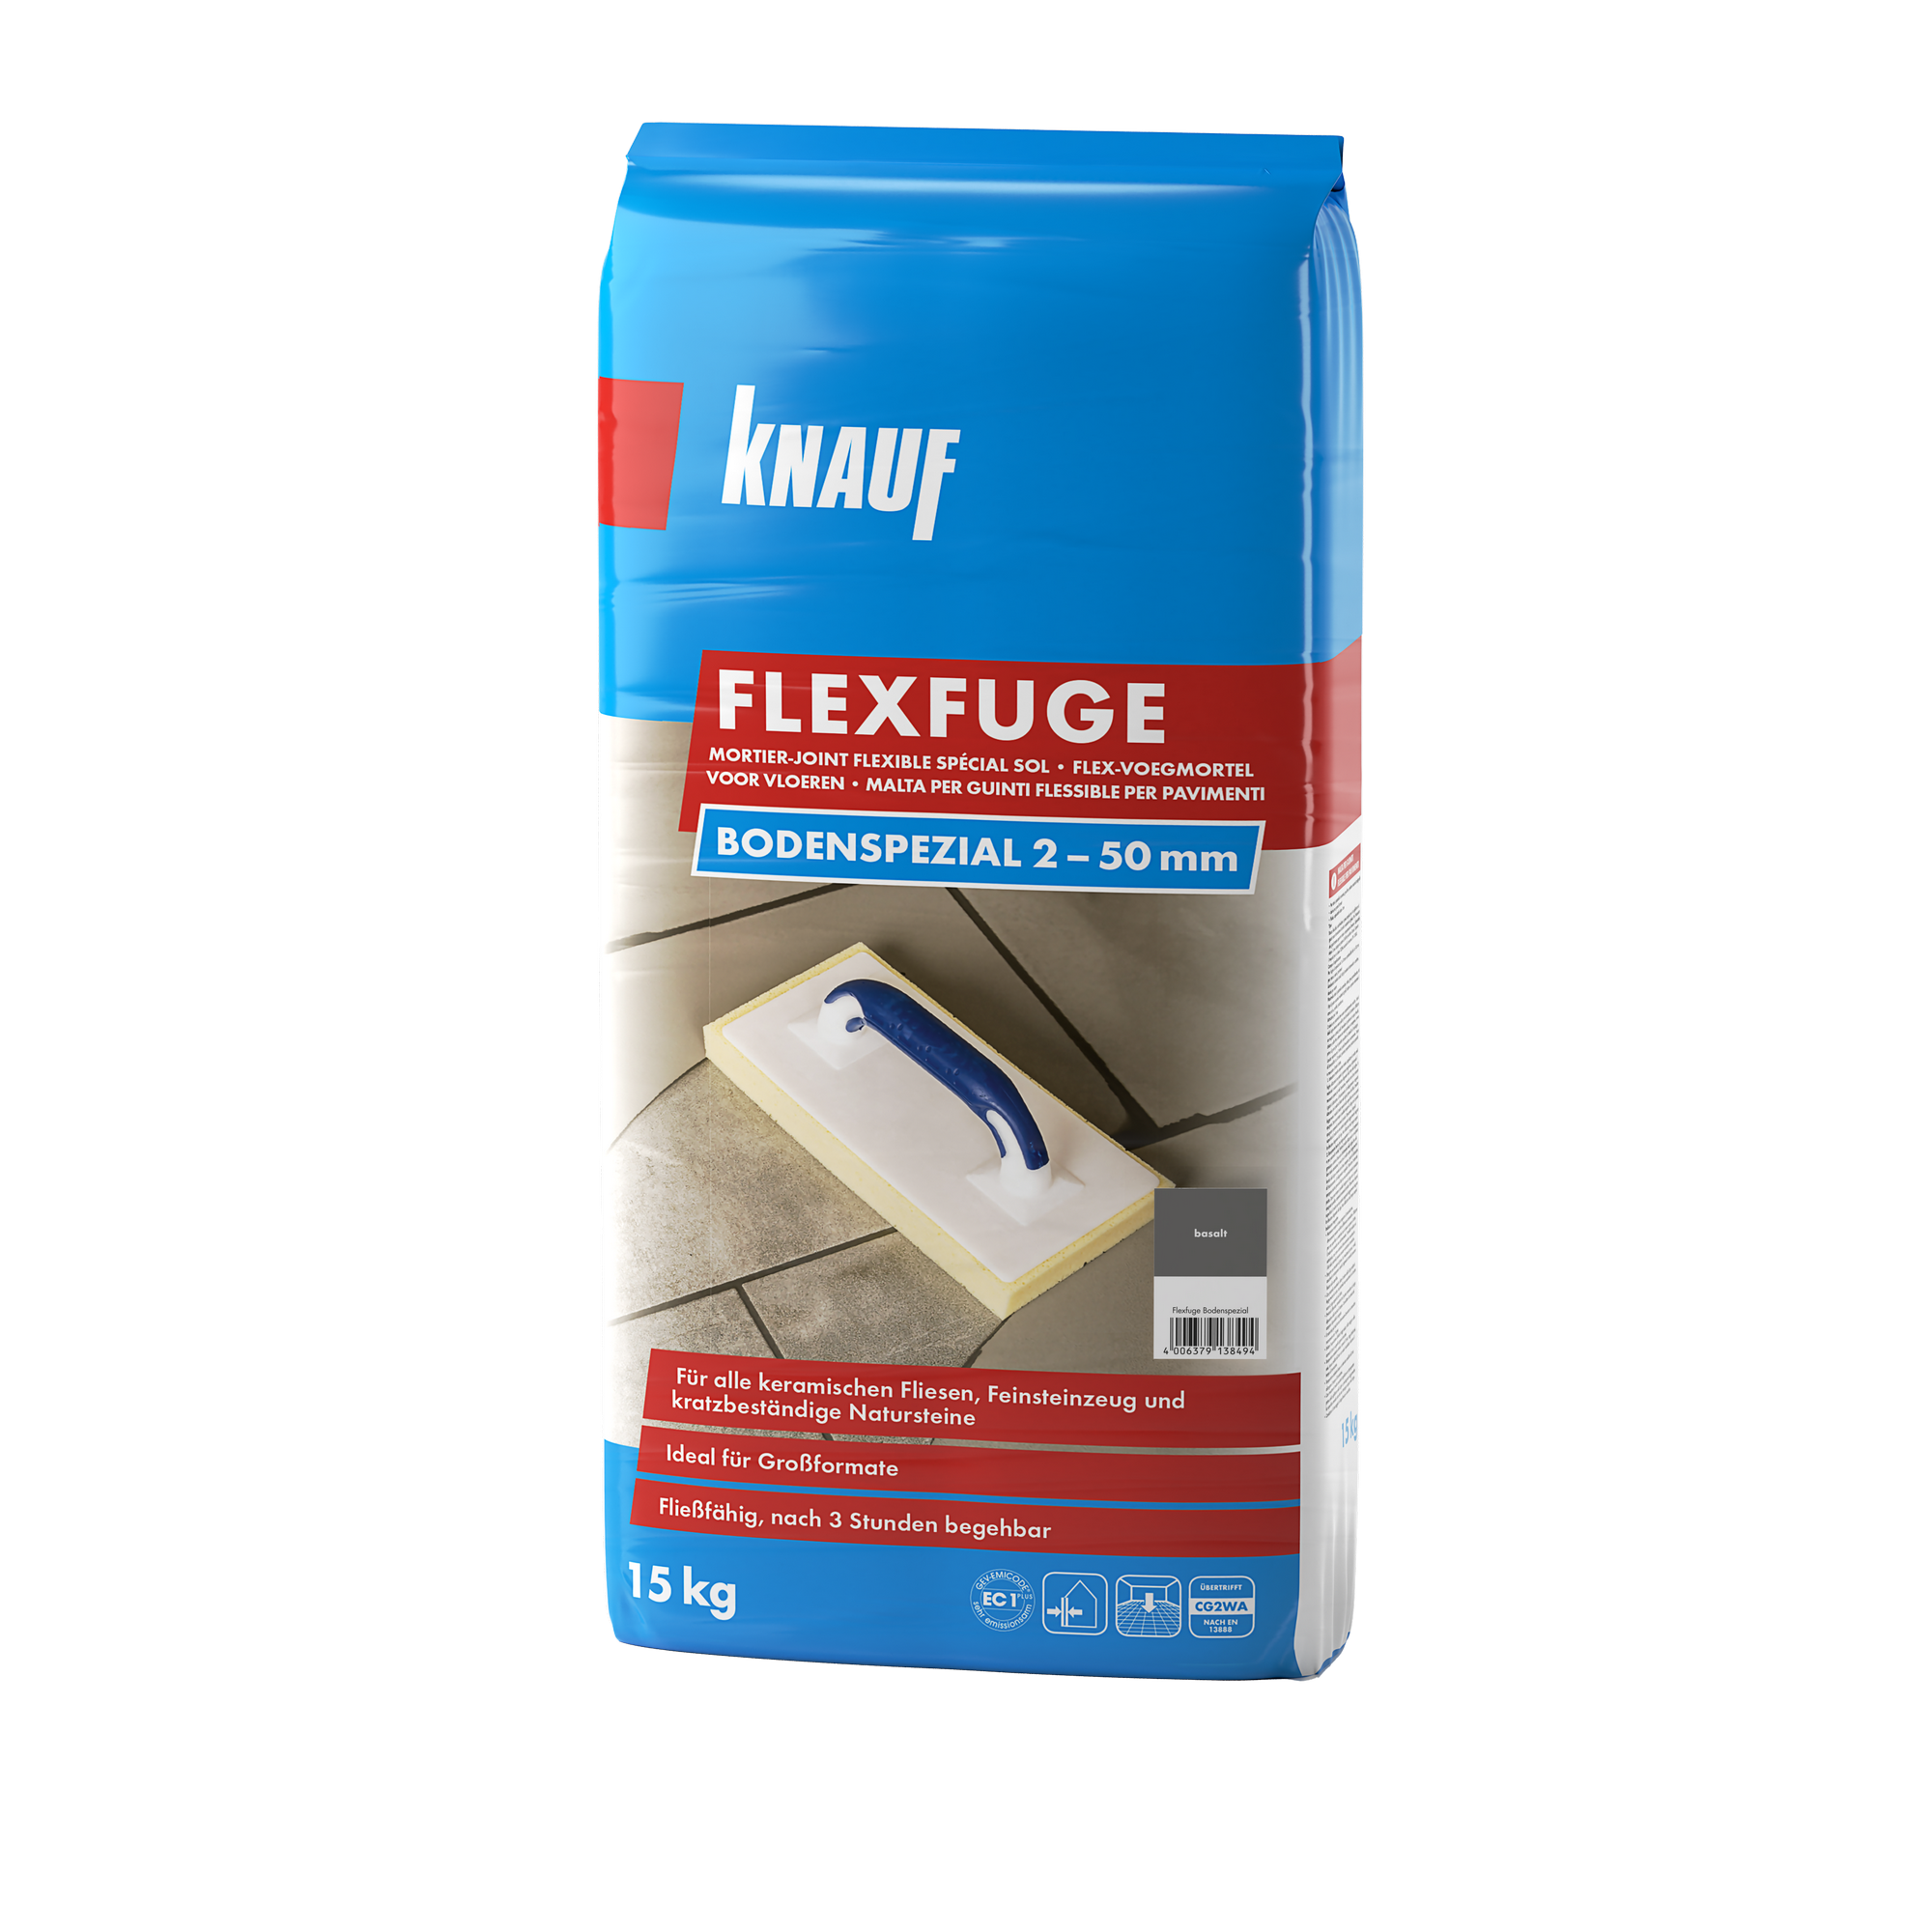 Flexfuge 'Bodenspezial' basalt 15 kg + product picture